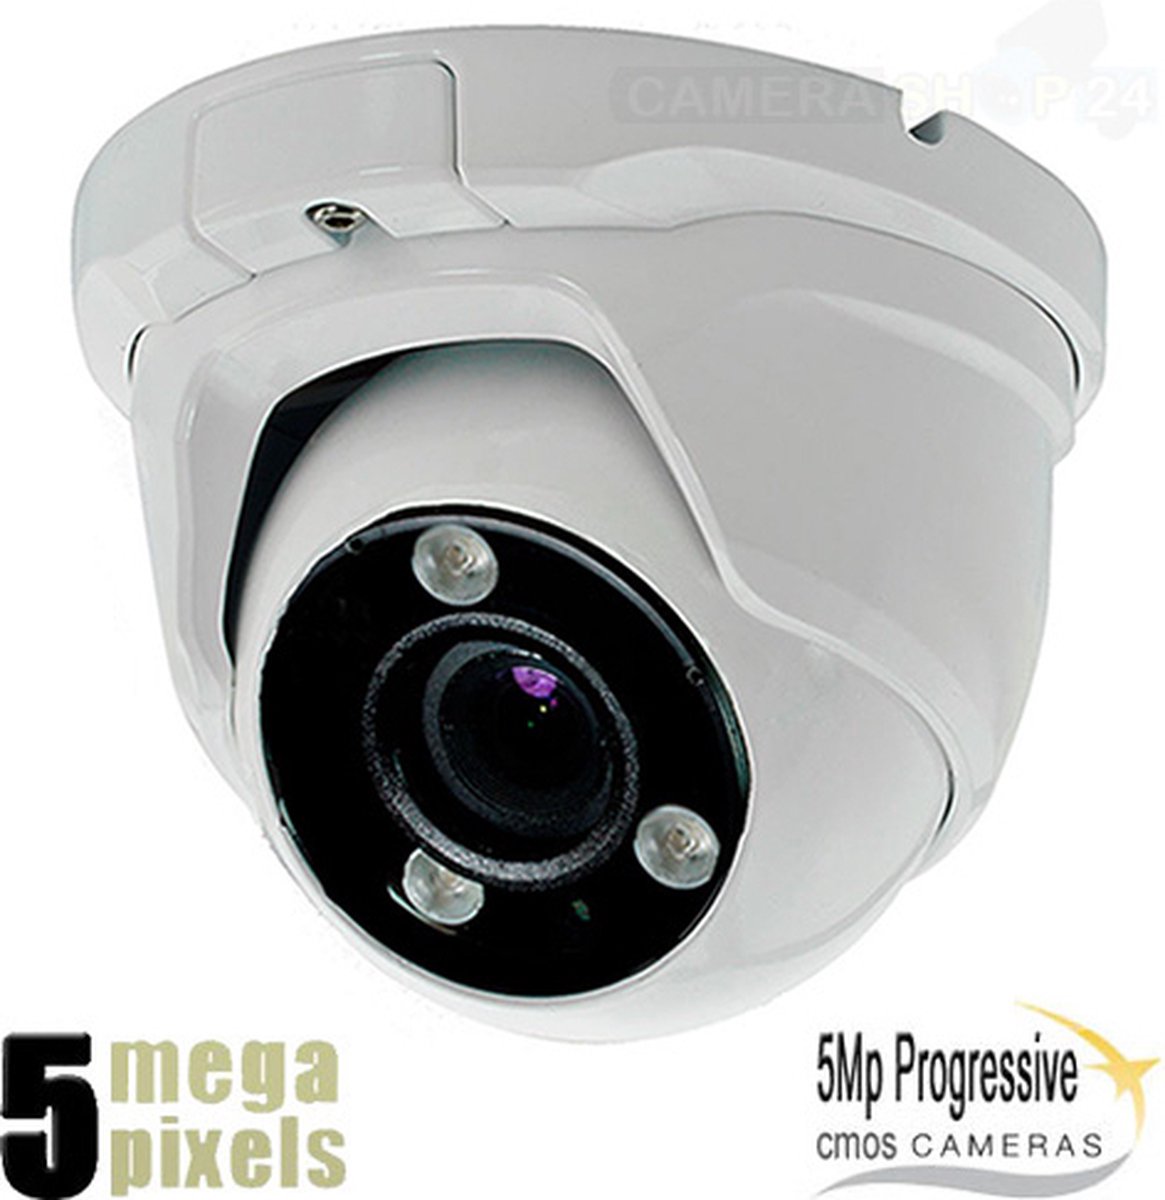 Beveiligingscamera - Dome Camera 4 in 1 - 5 Megapixel - Zeer Scherp Helder Beeld - Motorzoomlens - Nachtzicht 40 meter - Buiten Camera - BLC - DWDR - Ruisreductie 2DNR